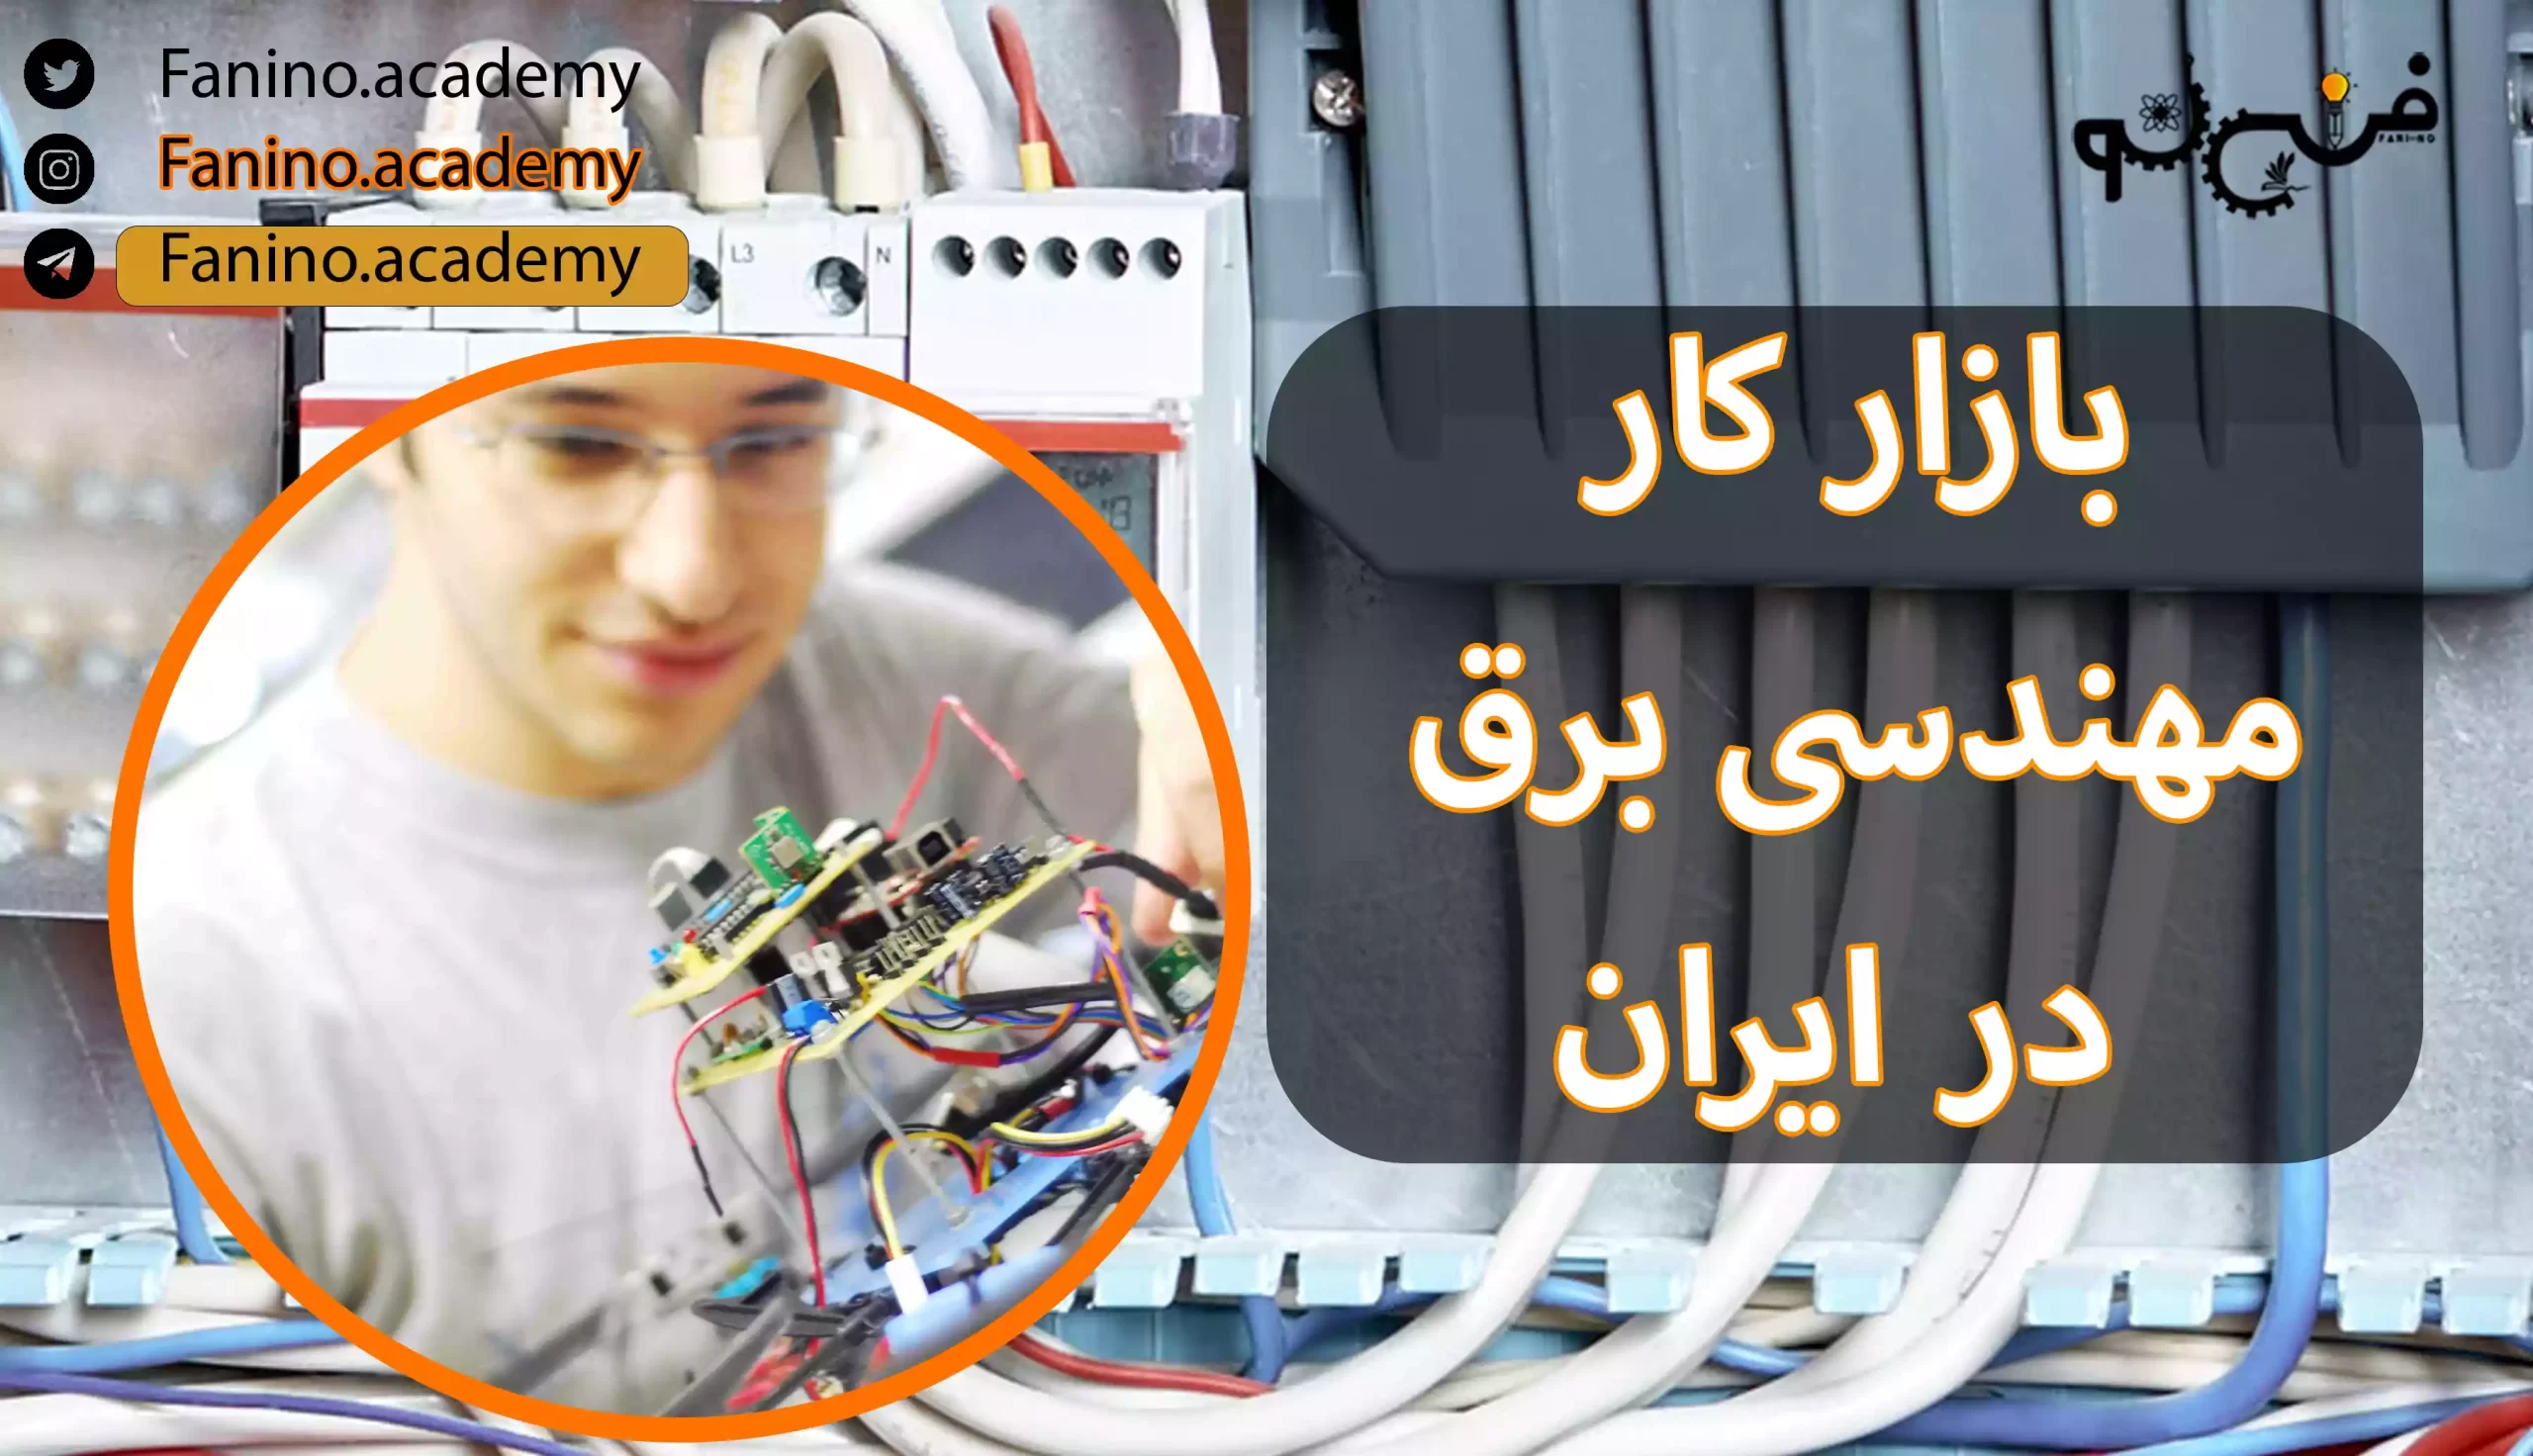 بازار کار مهندسی برق در ایران